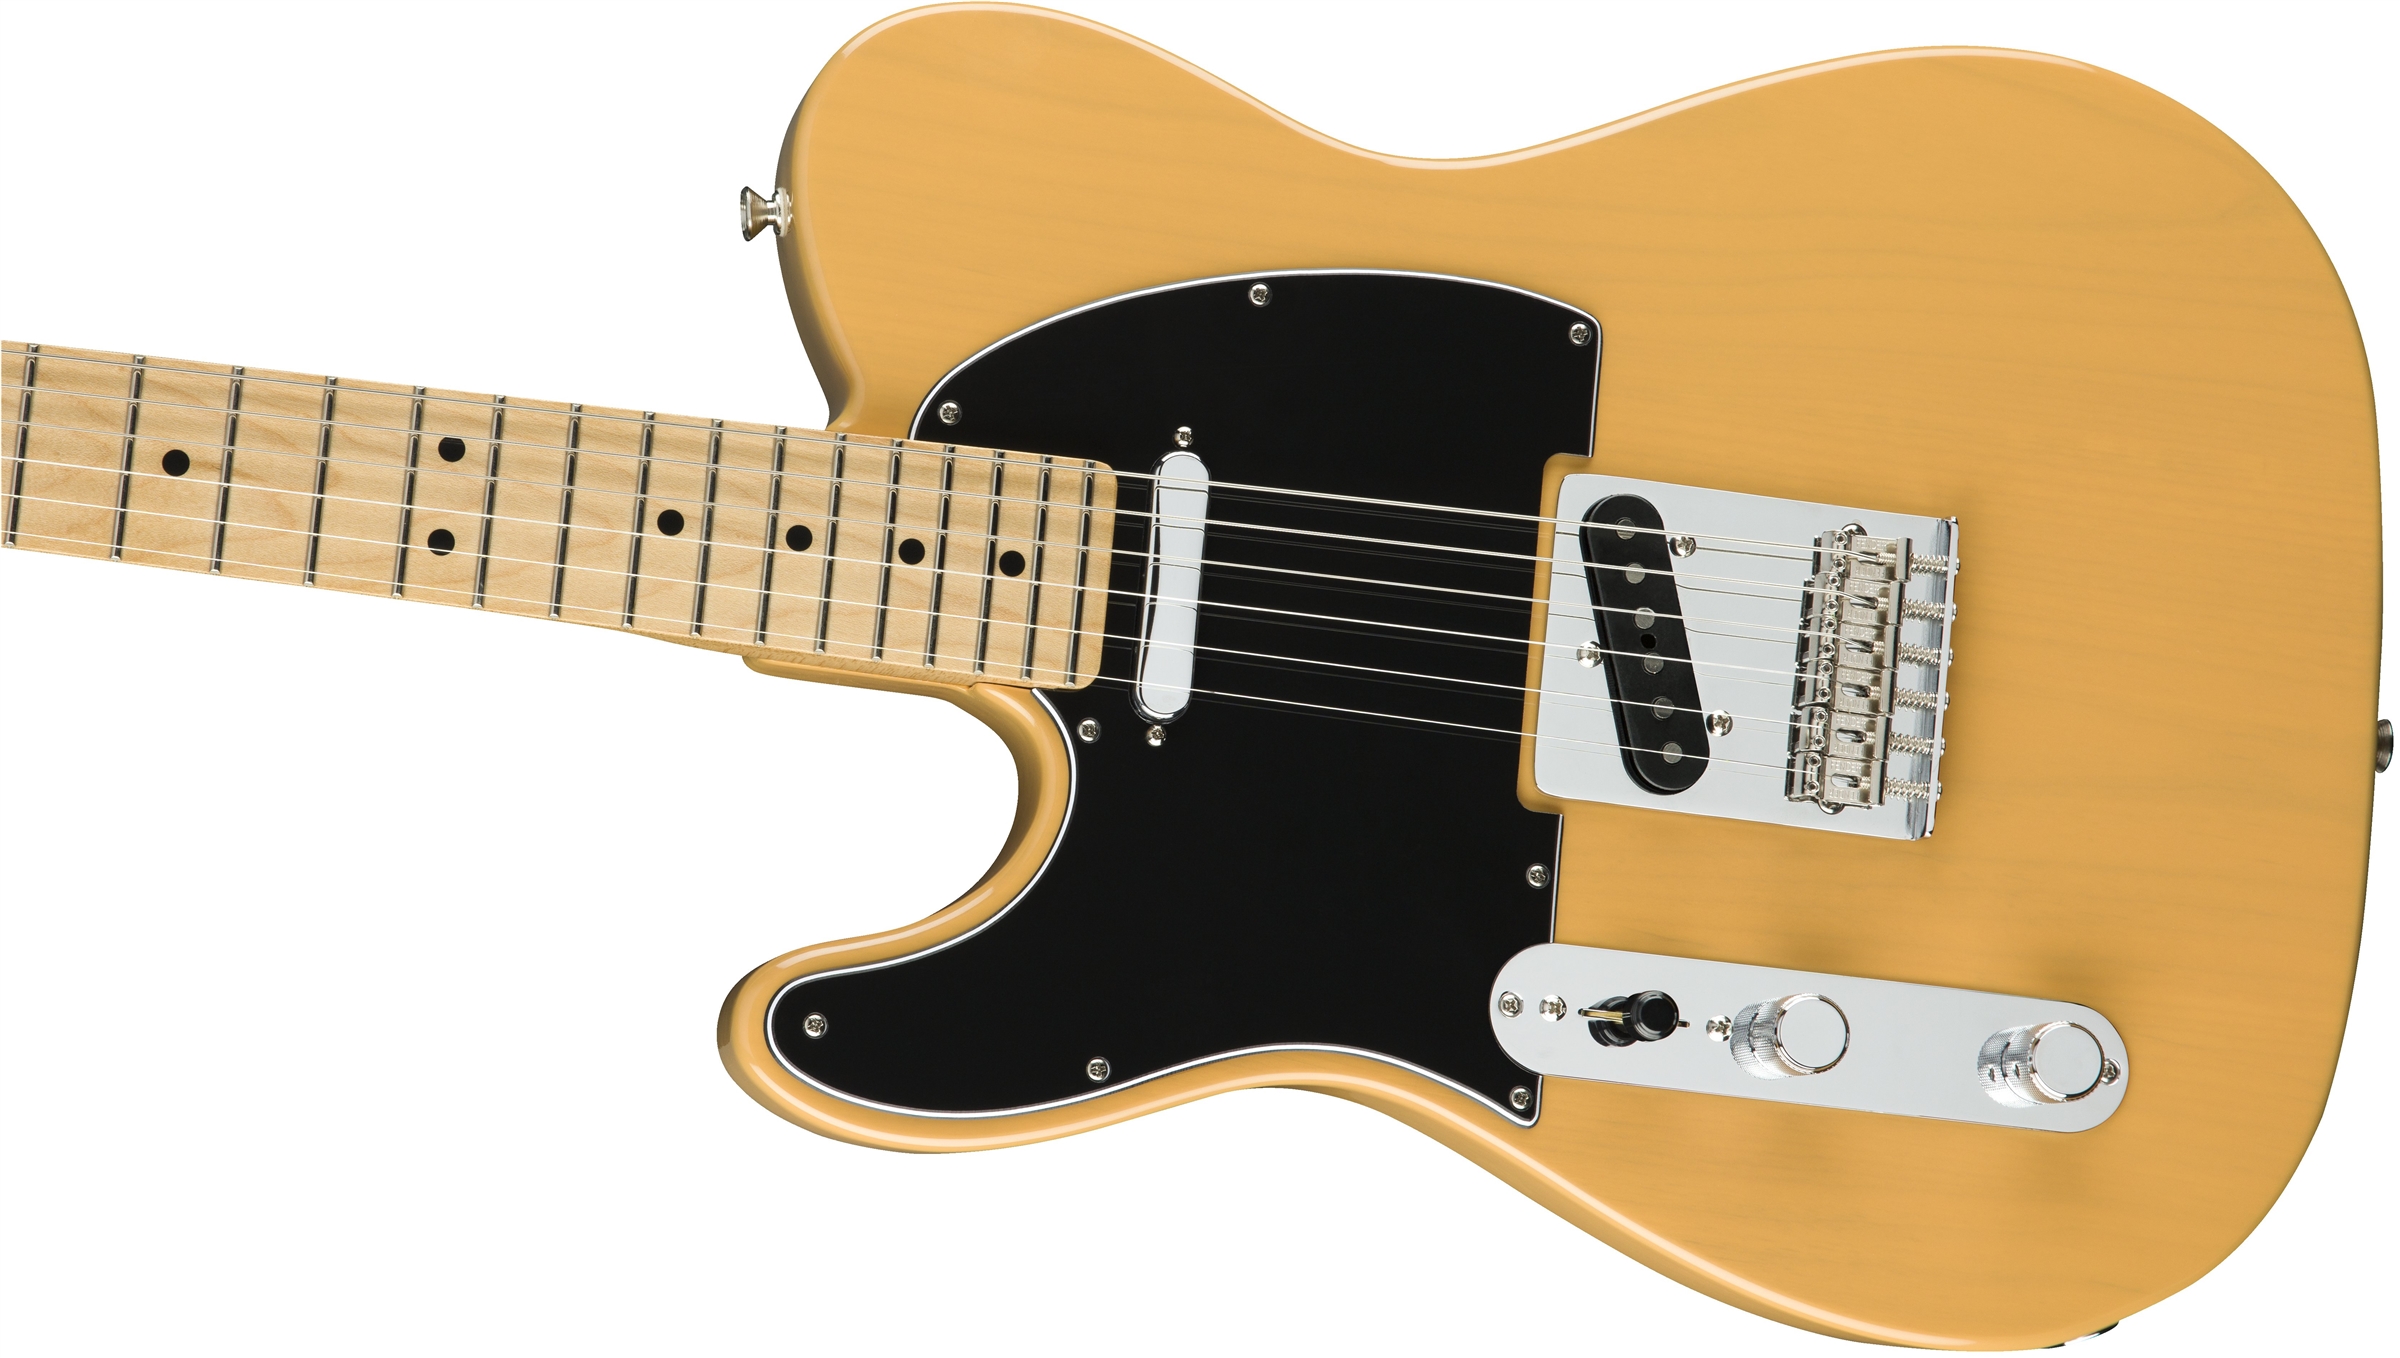 Fender Tele Player Lh Gaucher Mex 2s Mn - Butterscotch Blonde - Guitarra electrica para zurdos - Variation 3